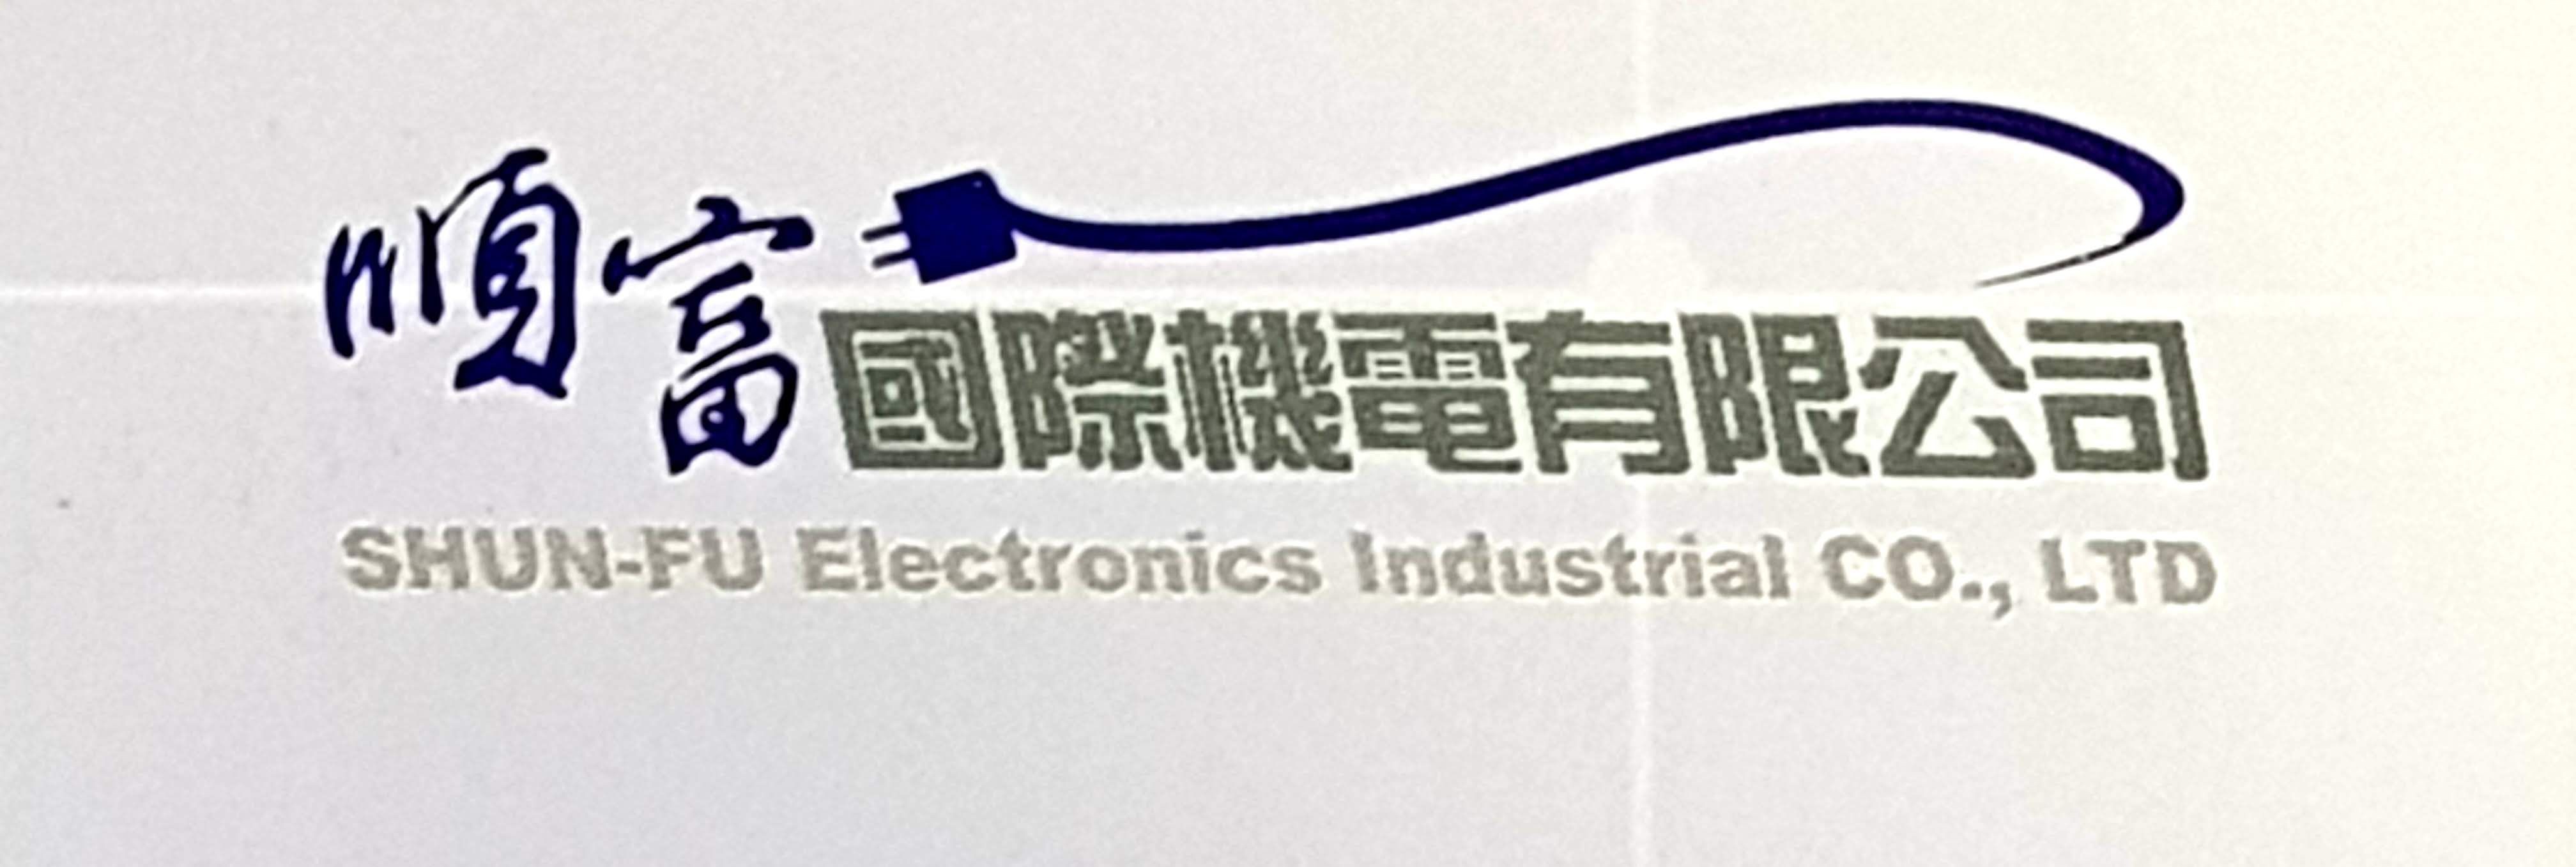 SHUN-FU Electronice CO., LTD